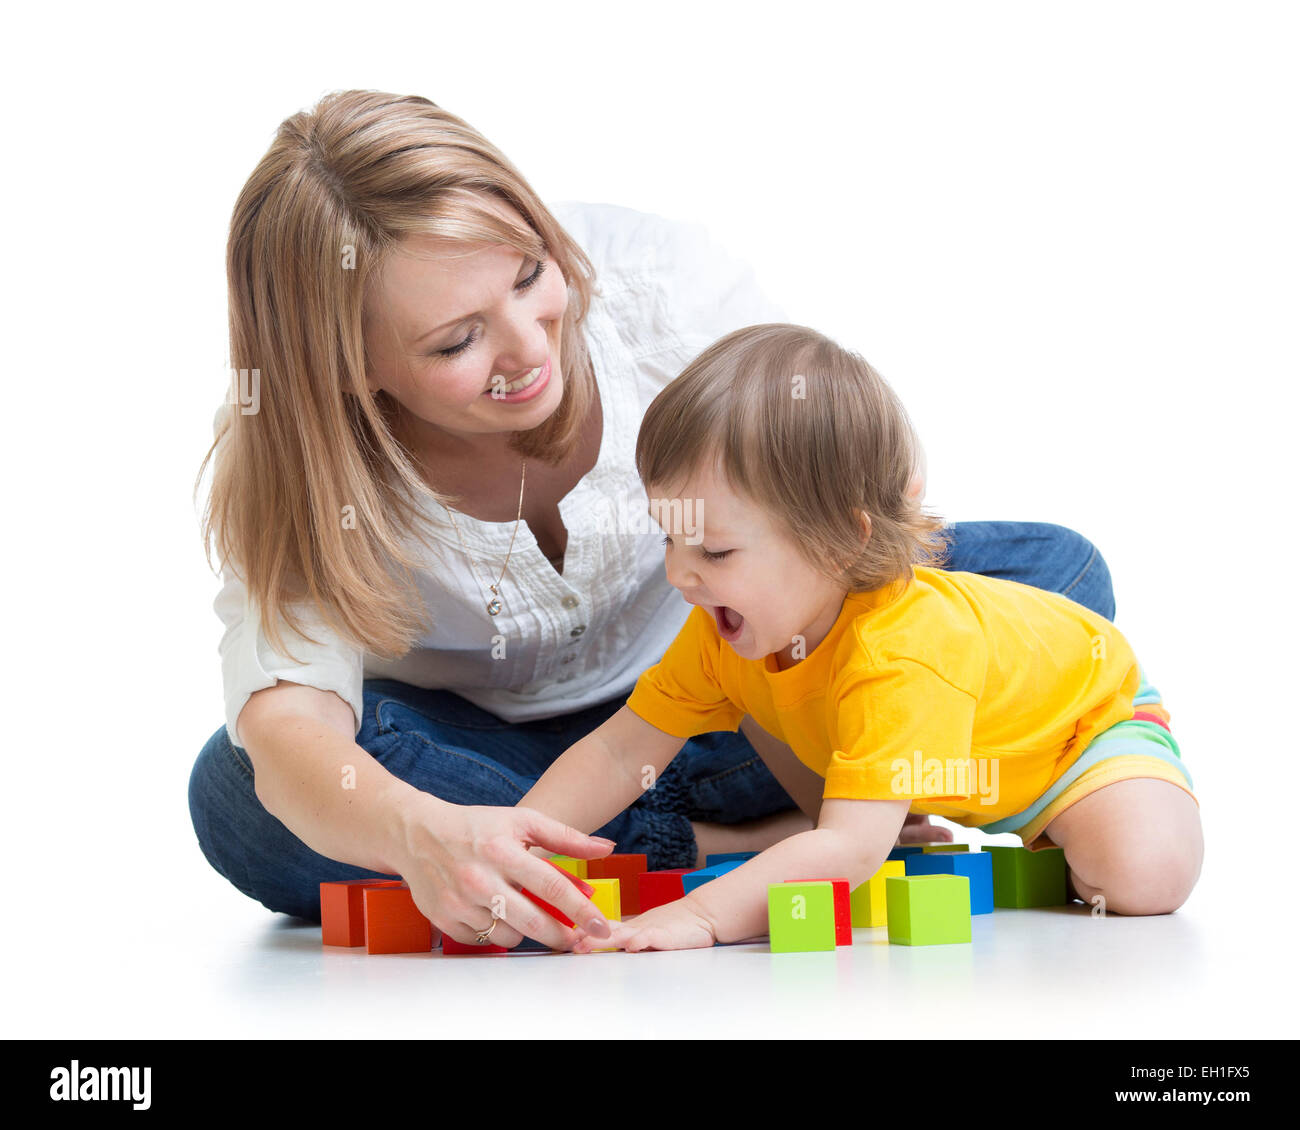 La madre y el bebé jugando y divirtiéndose Foto de stock